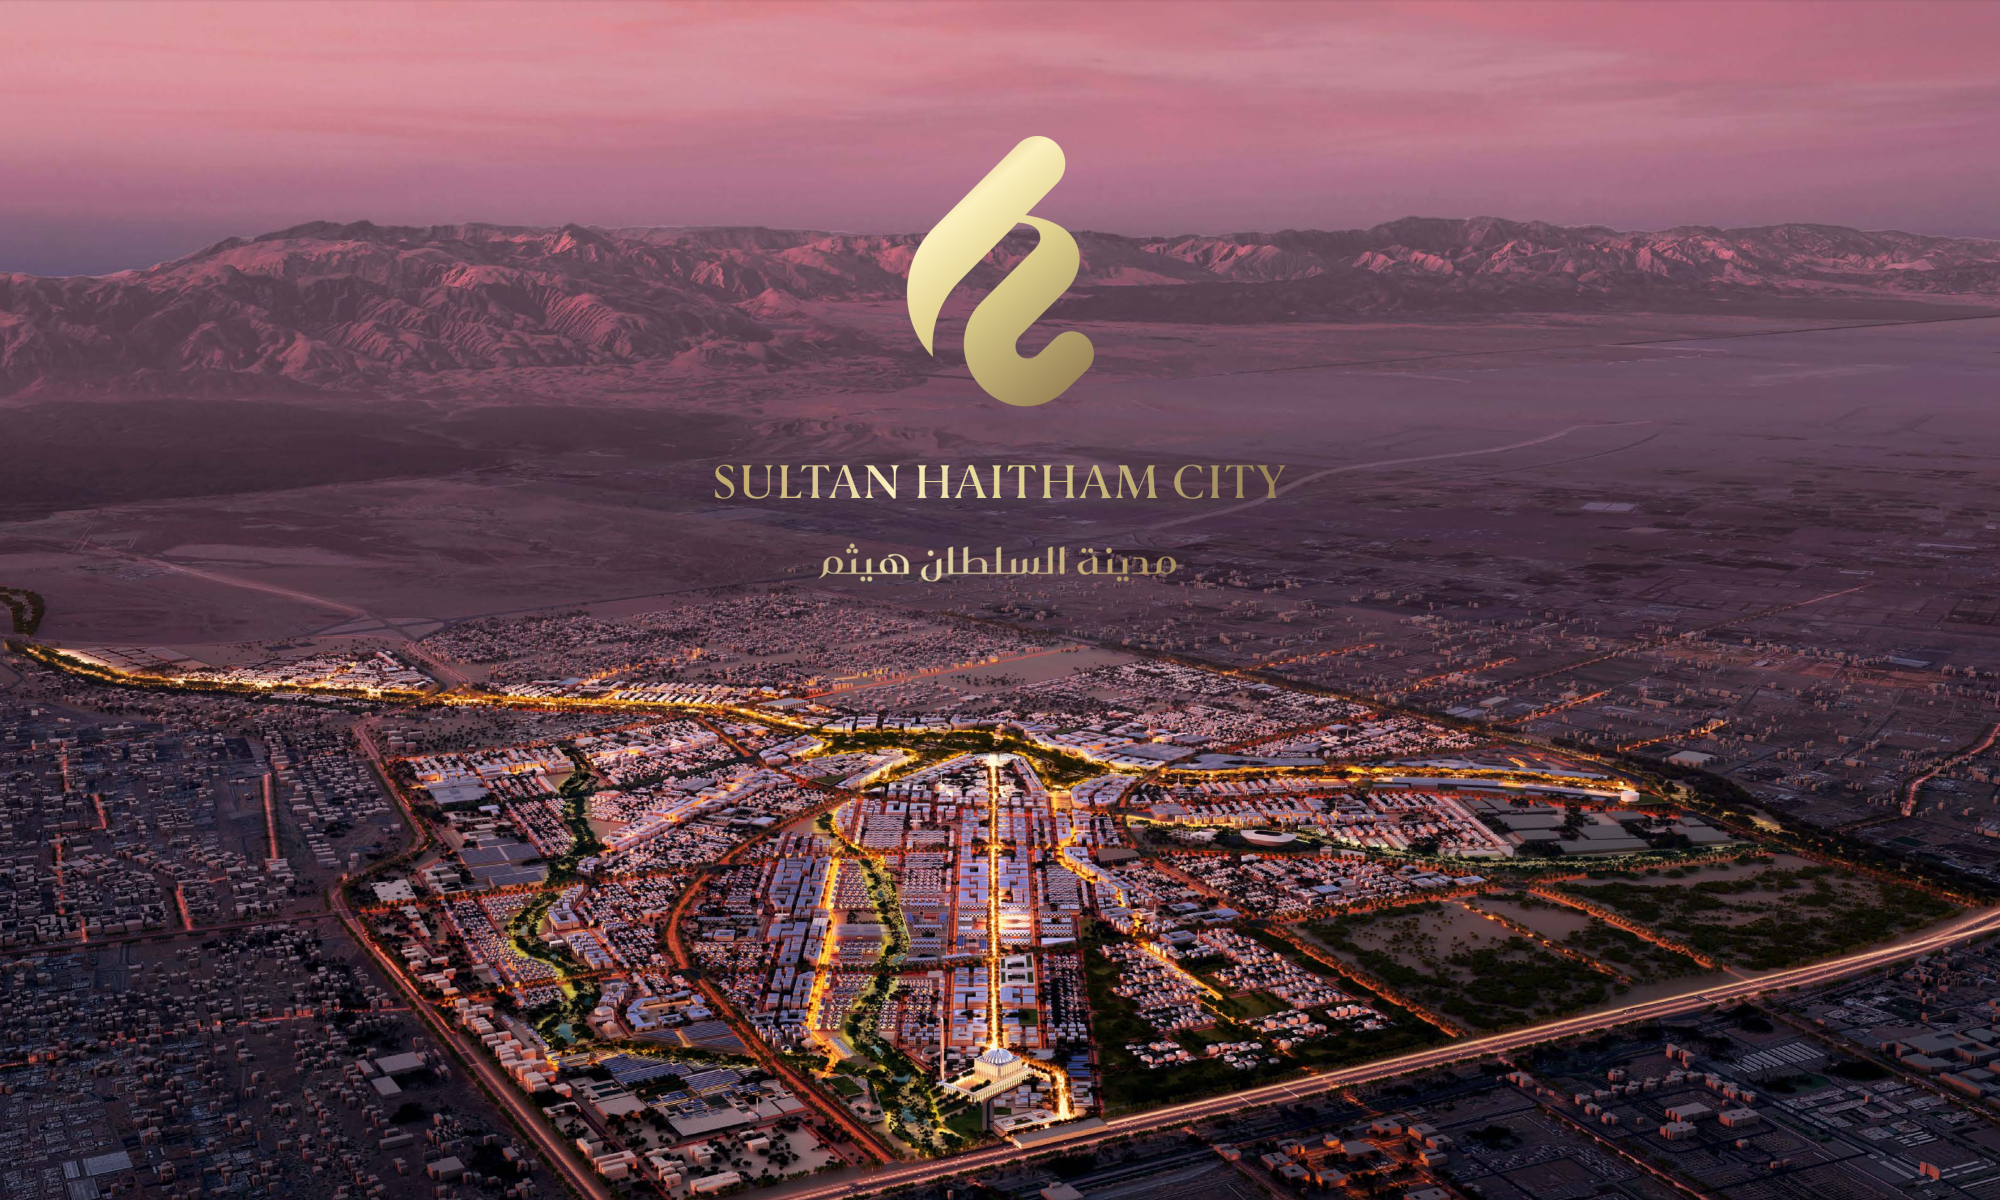 Sultan Haitham City, main